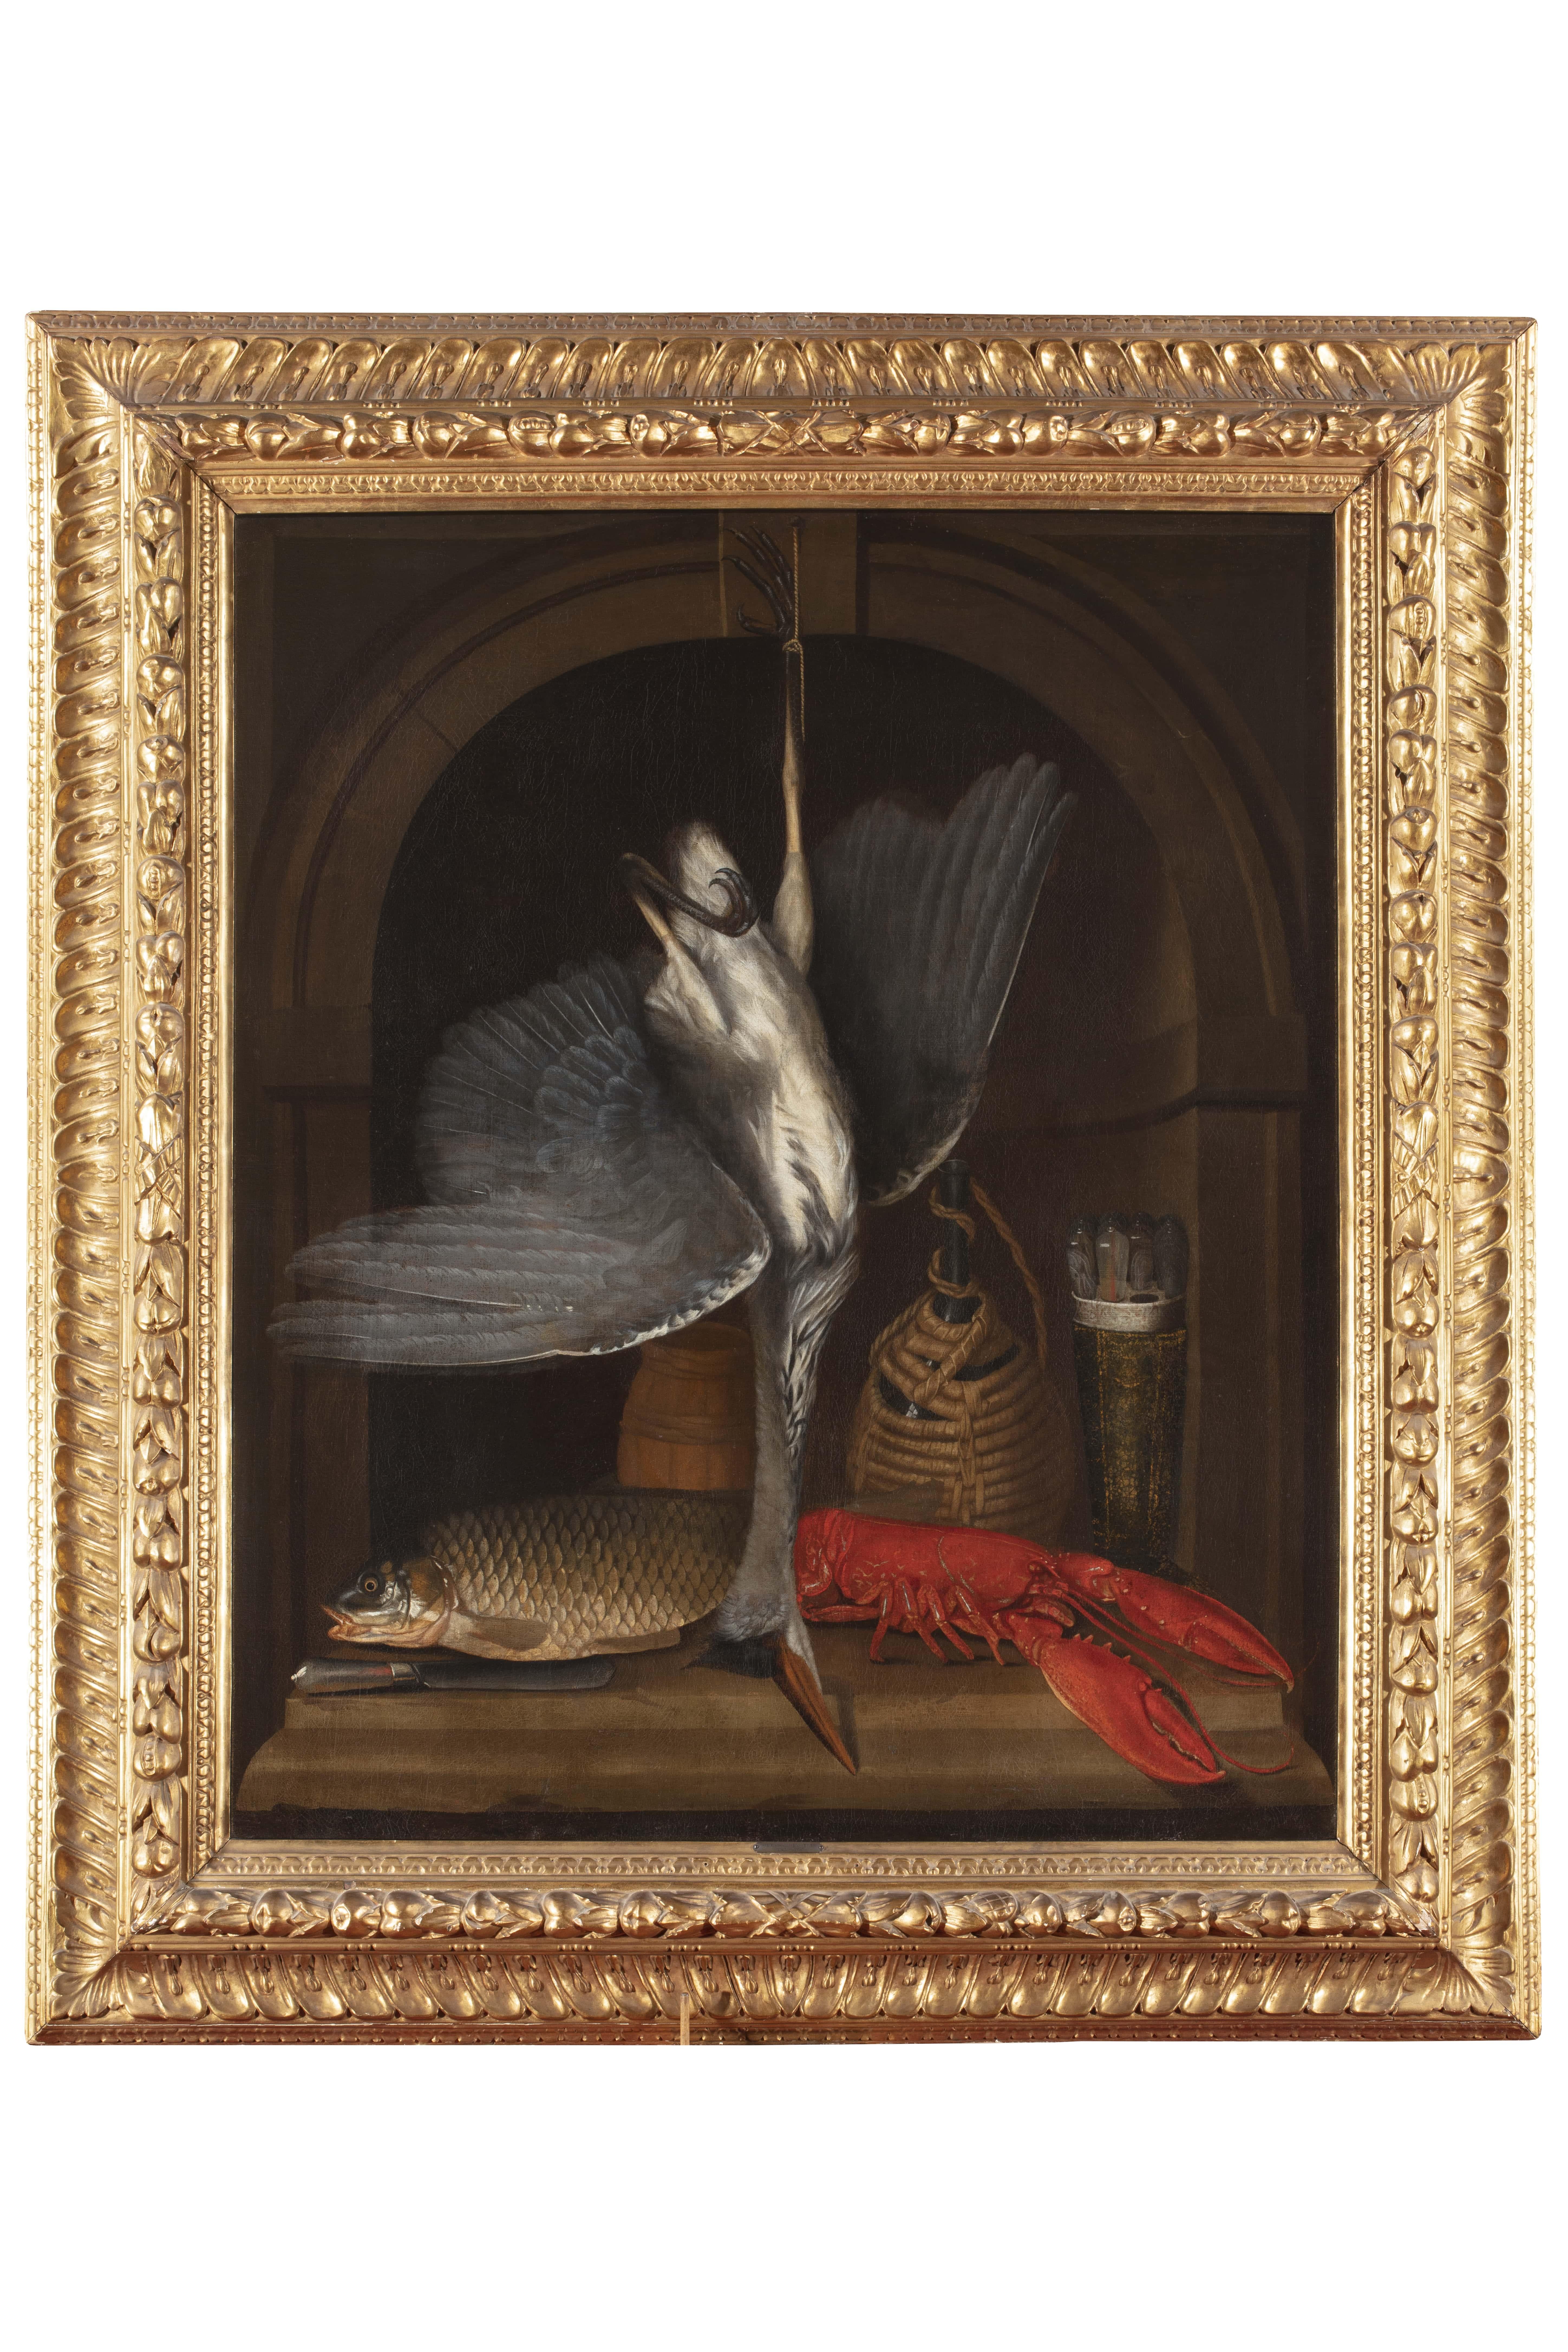 17th-century Dutch maestro Still-Life Painting – 17. Jahrhundert Von niederländischem Maestro Stillleben mit Vogel, Schnitzerei und Hummer Öl auf Leinwand